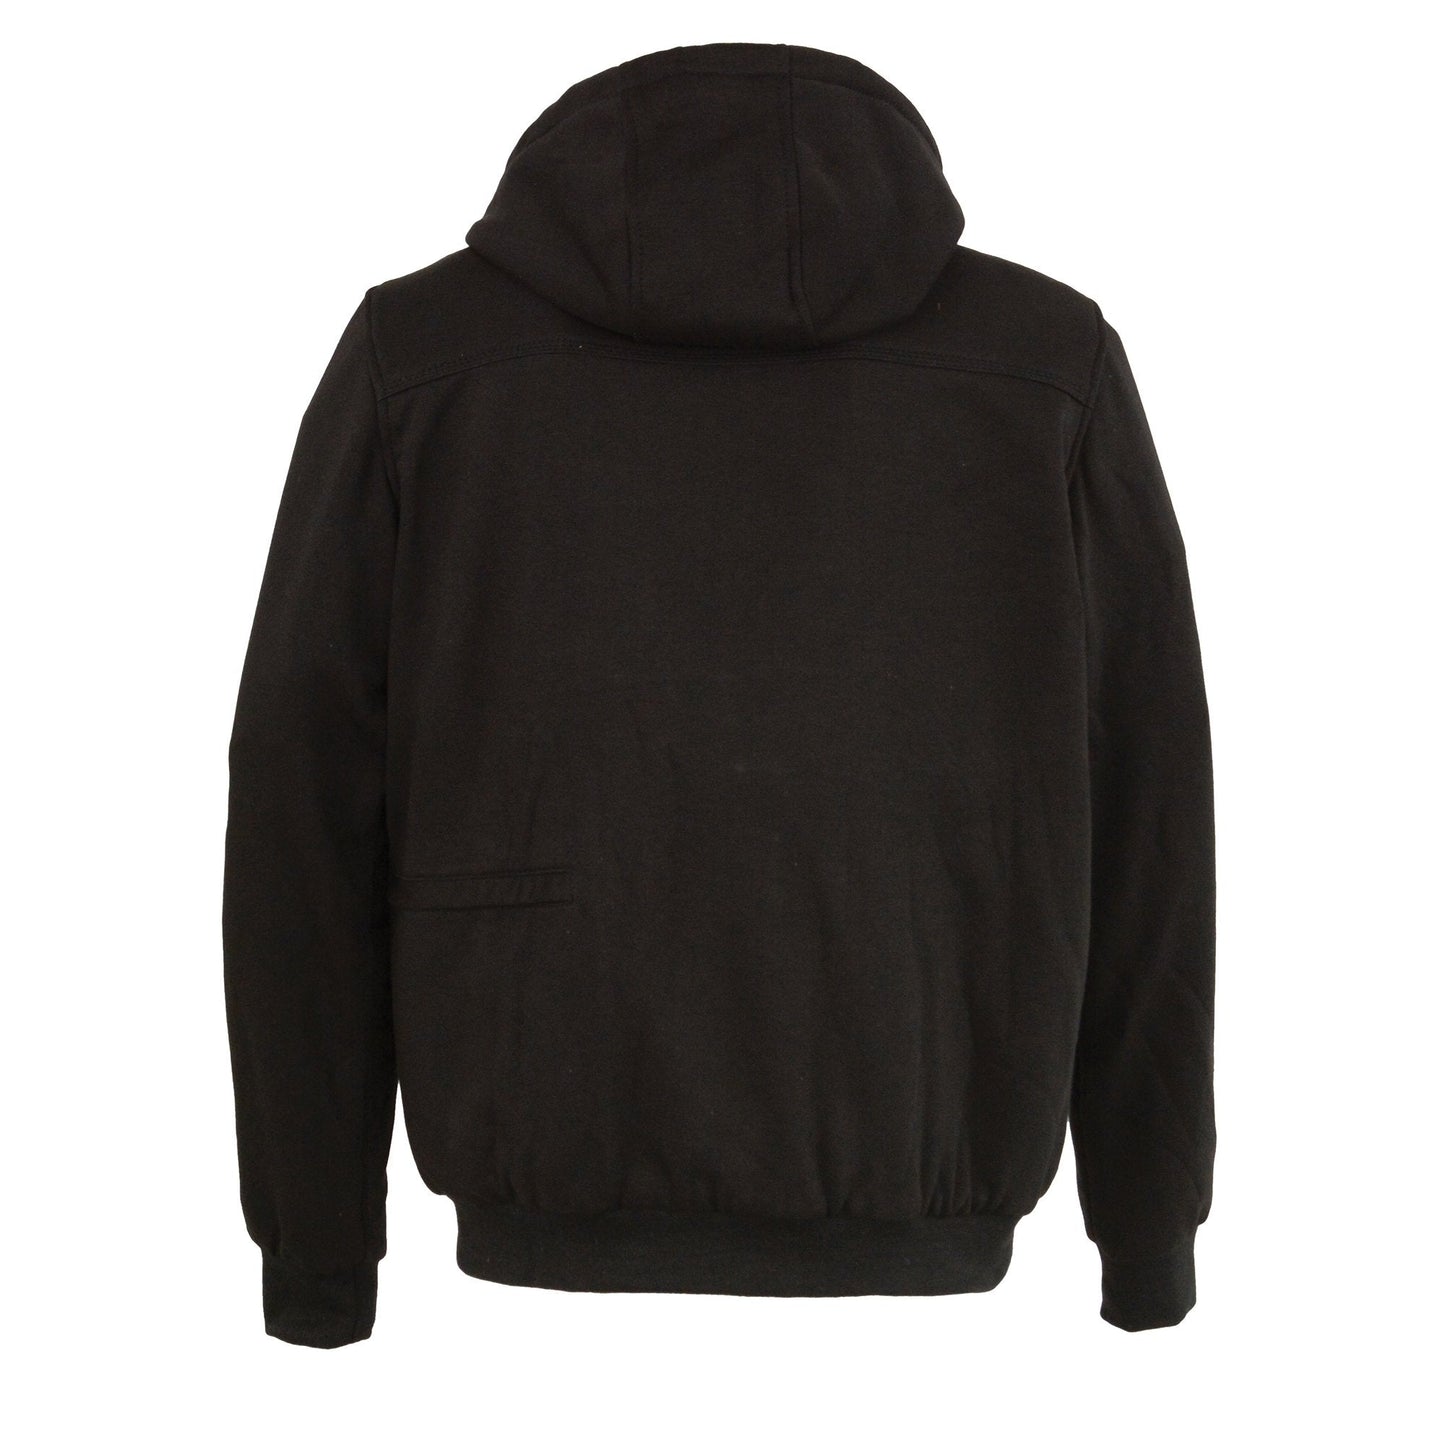 Nexgen Heat MPM1713SET Men's “Fiery’’ Heated Hoodie- Black Zipper Front Sweatshirt Jacket for Winter w/Battery Pack